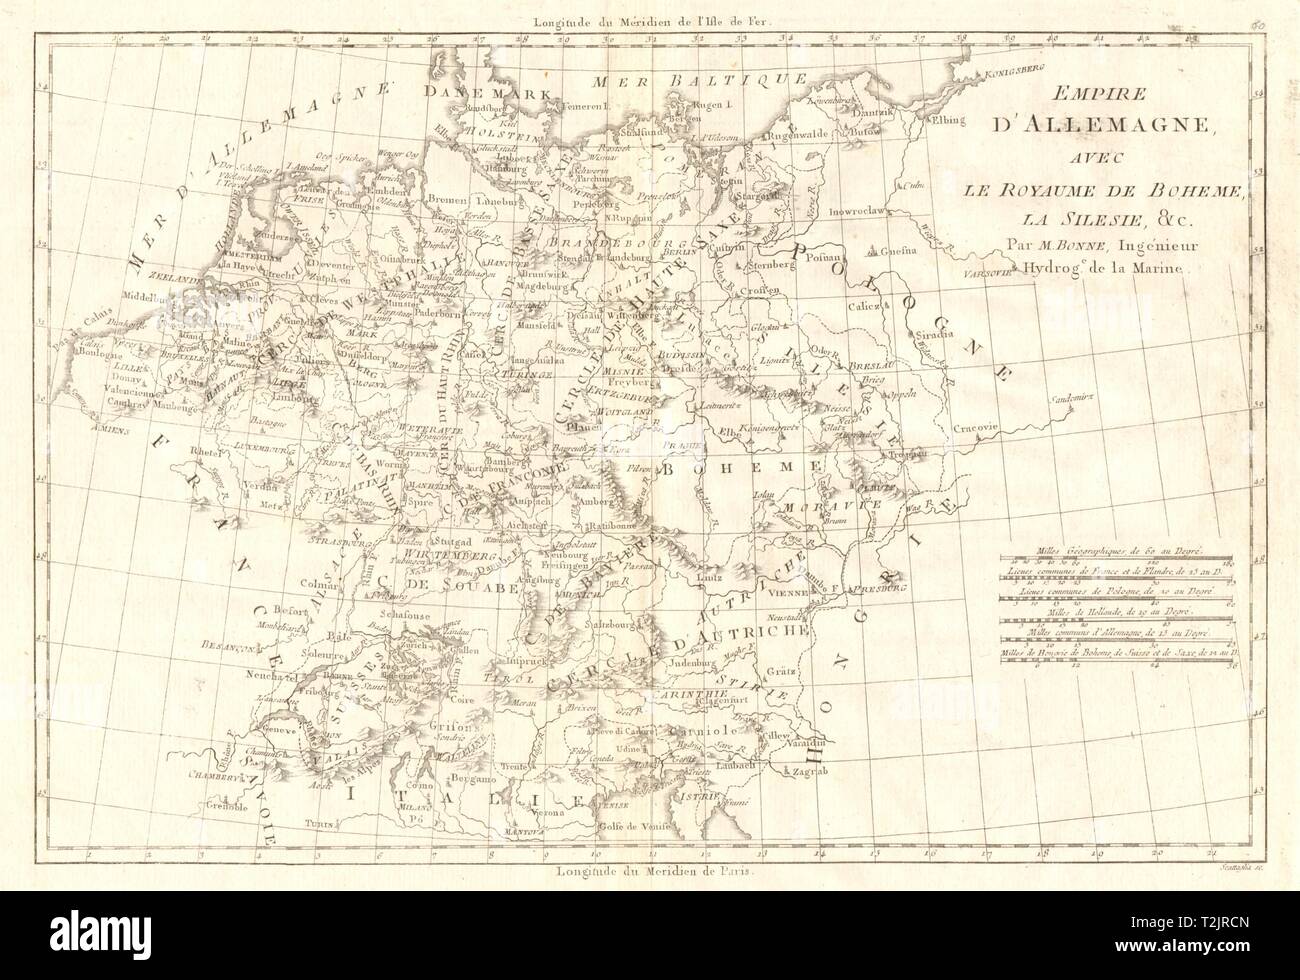 Empire d'Allemagne avec le royaume de Boheme, la Silesie. Germania BONNE 1789 mappa Foto Stock